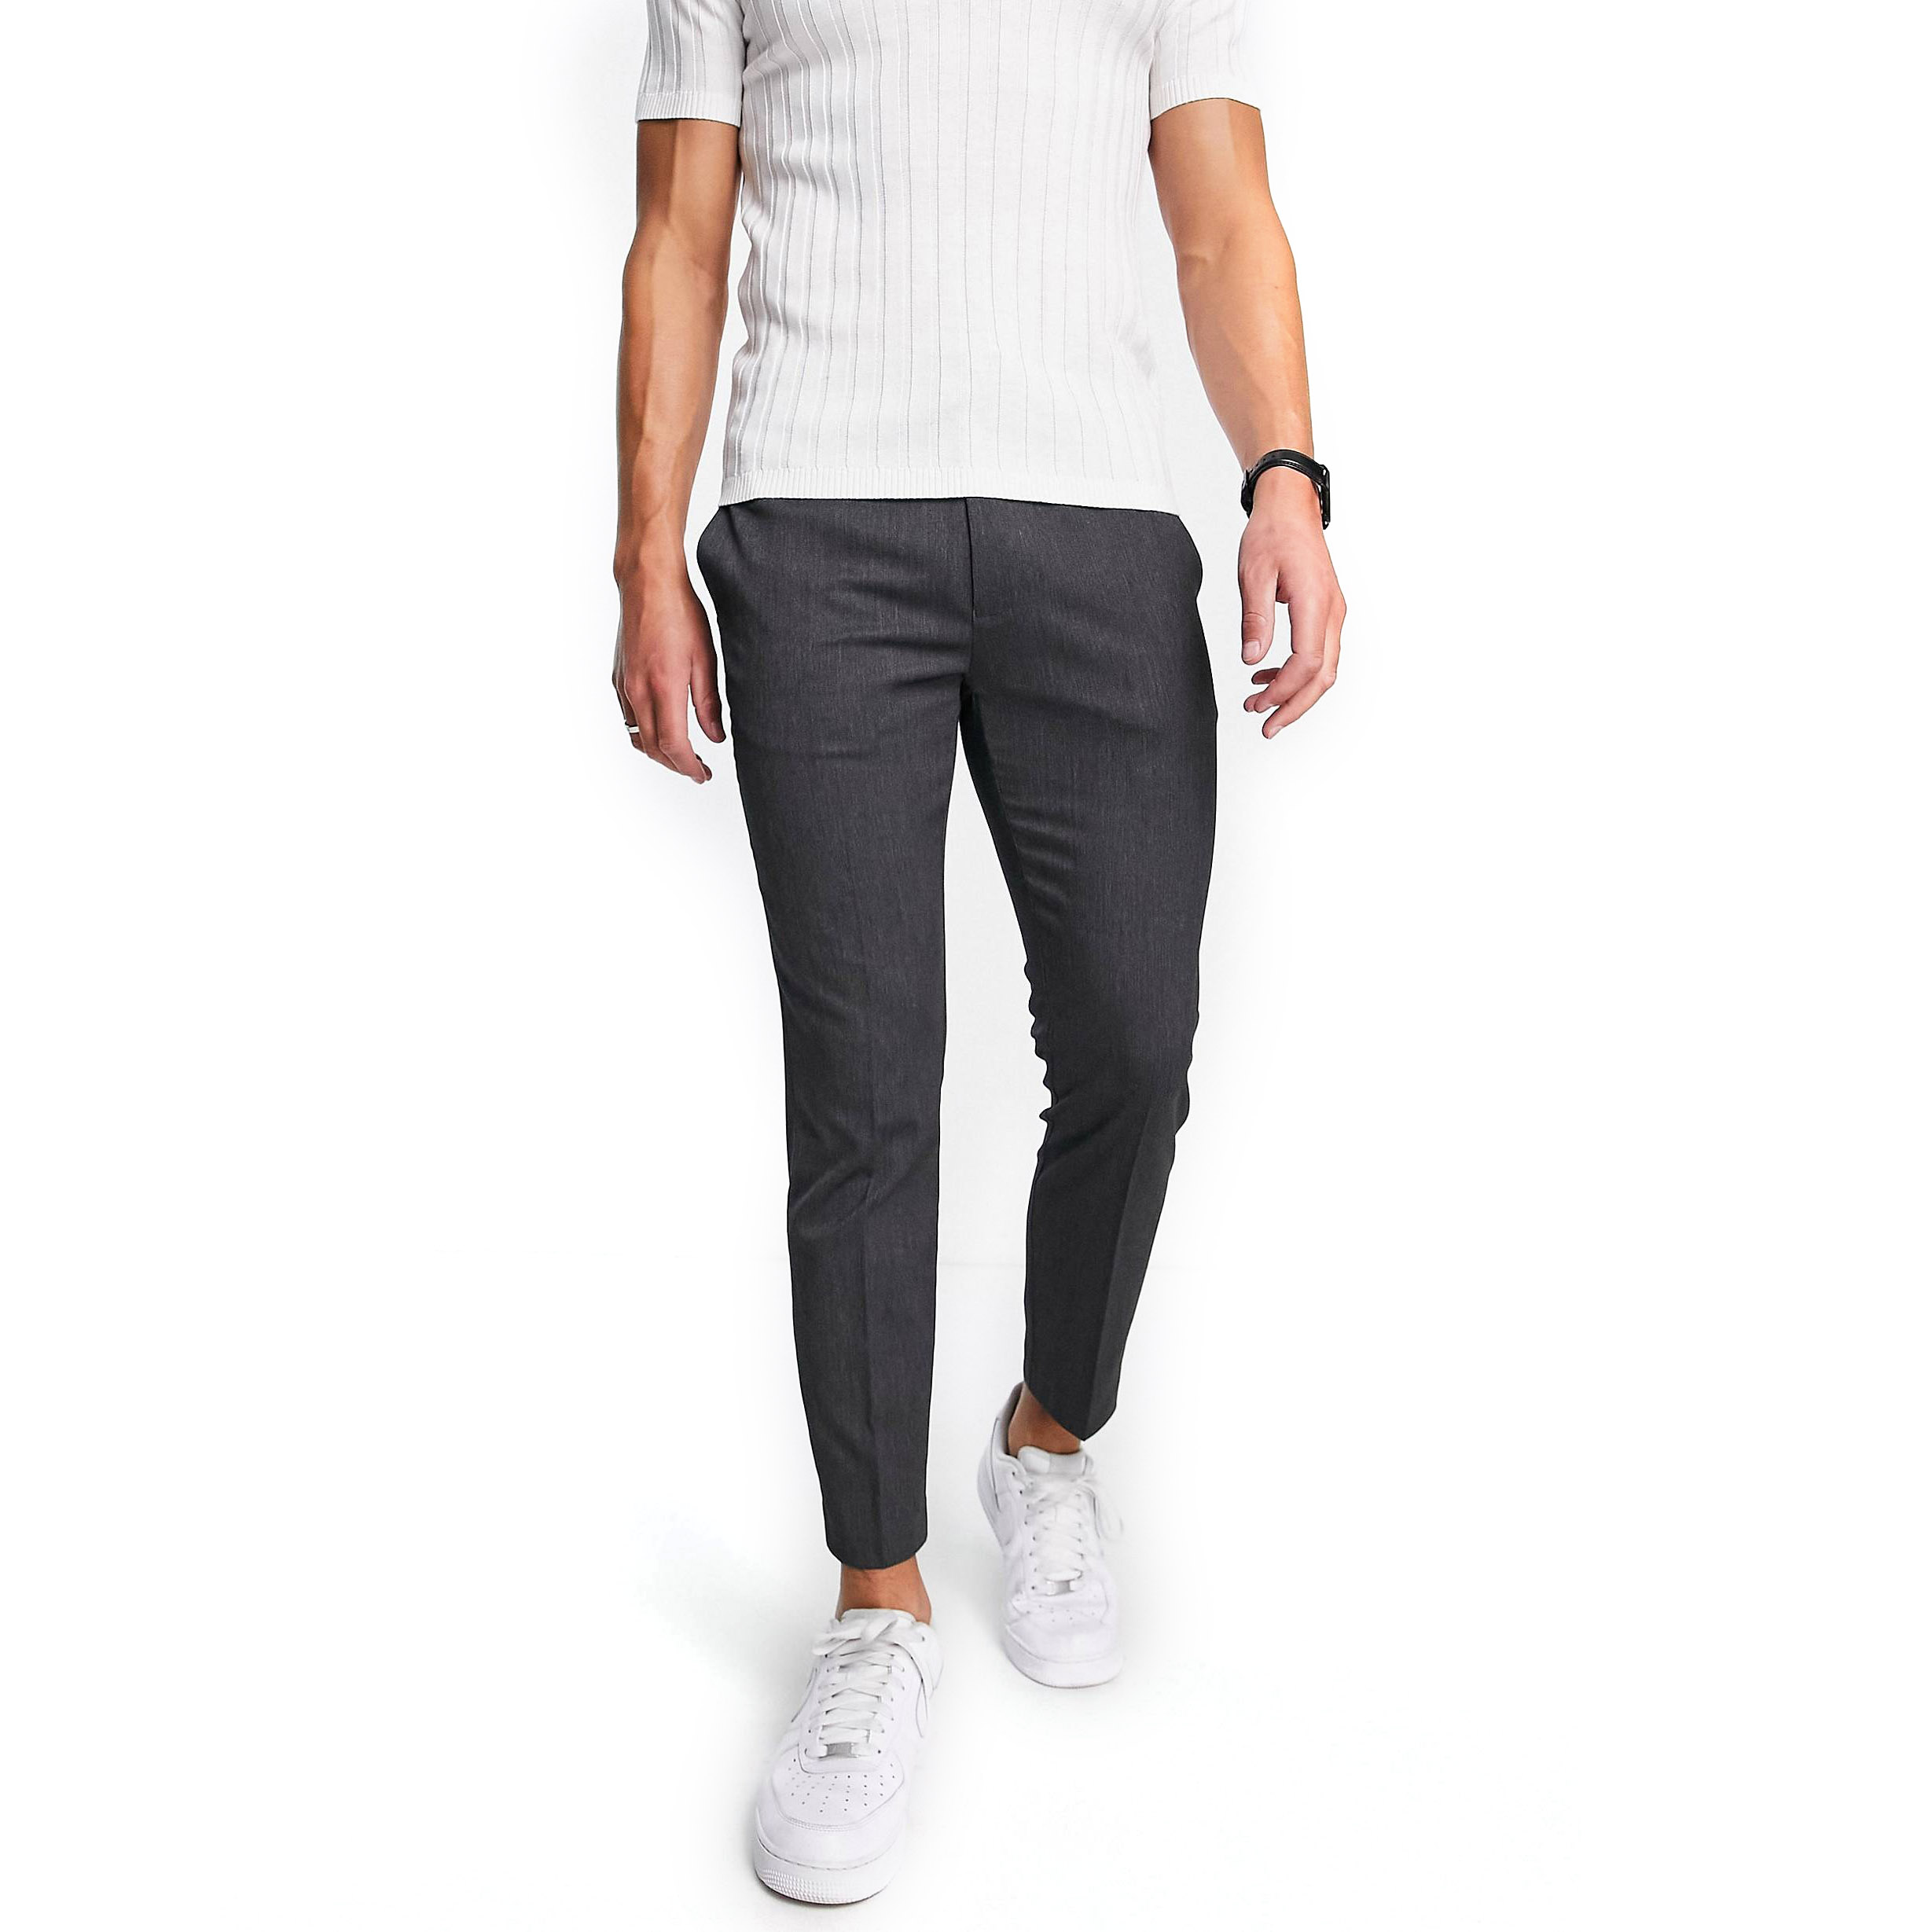 Брюки Topman Skinny Smart With Elasticated Waistband, темно-серый брюки zara cropped with elasticated waistband бежевый